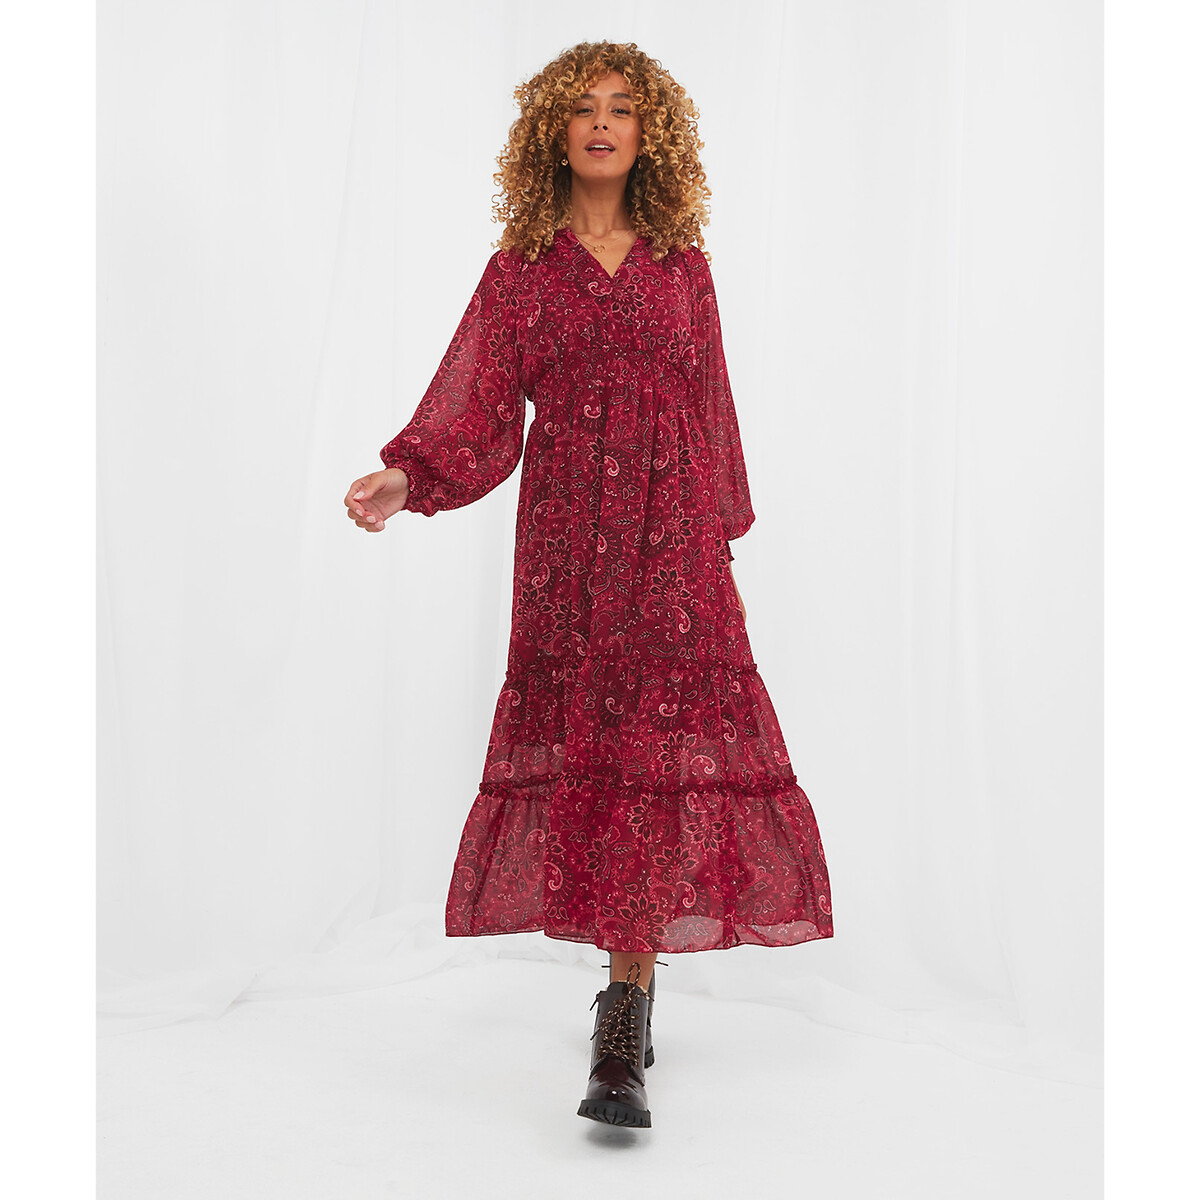 Платье JOE BROWNS Платье Из вуали пояс со сборками принт пейсли 42 розовый, размер 42 - фото 1